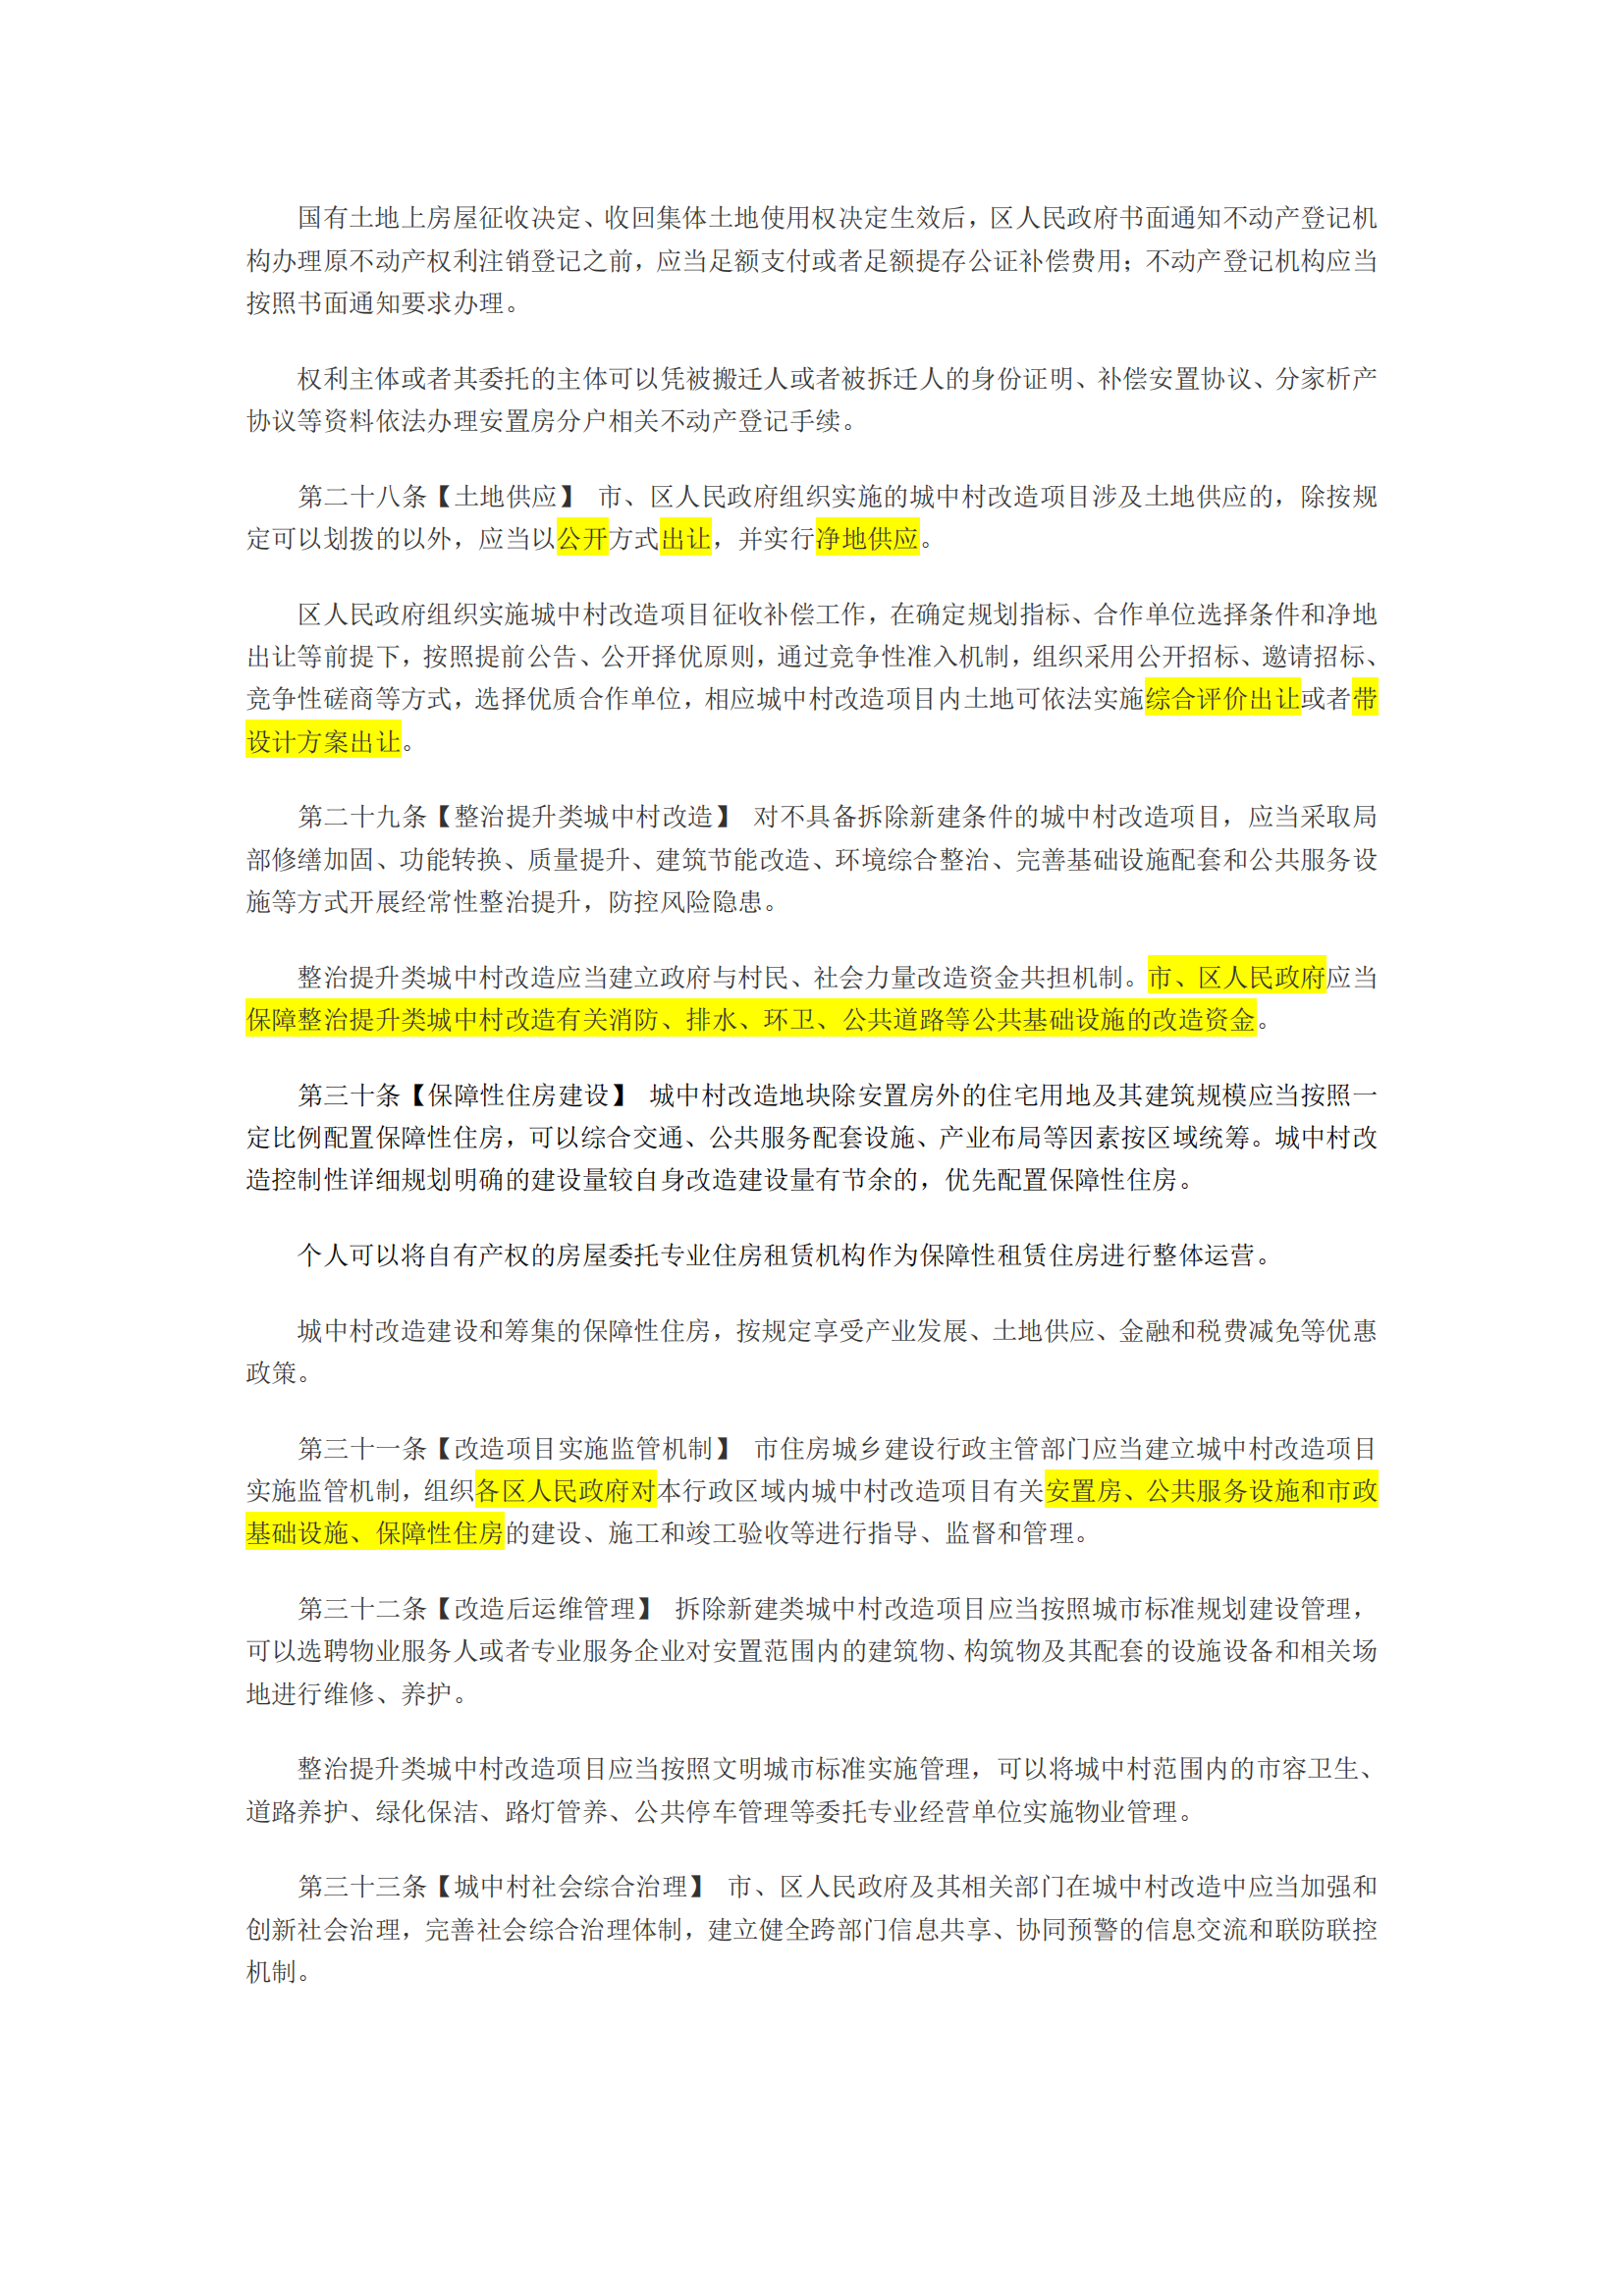 广州市城中村改造条例(征求意见稿，批注版)_05.png